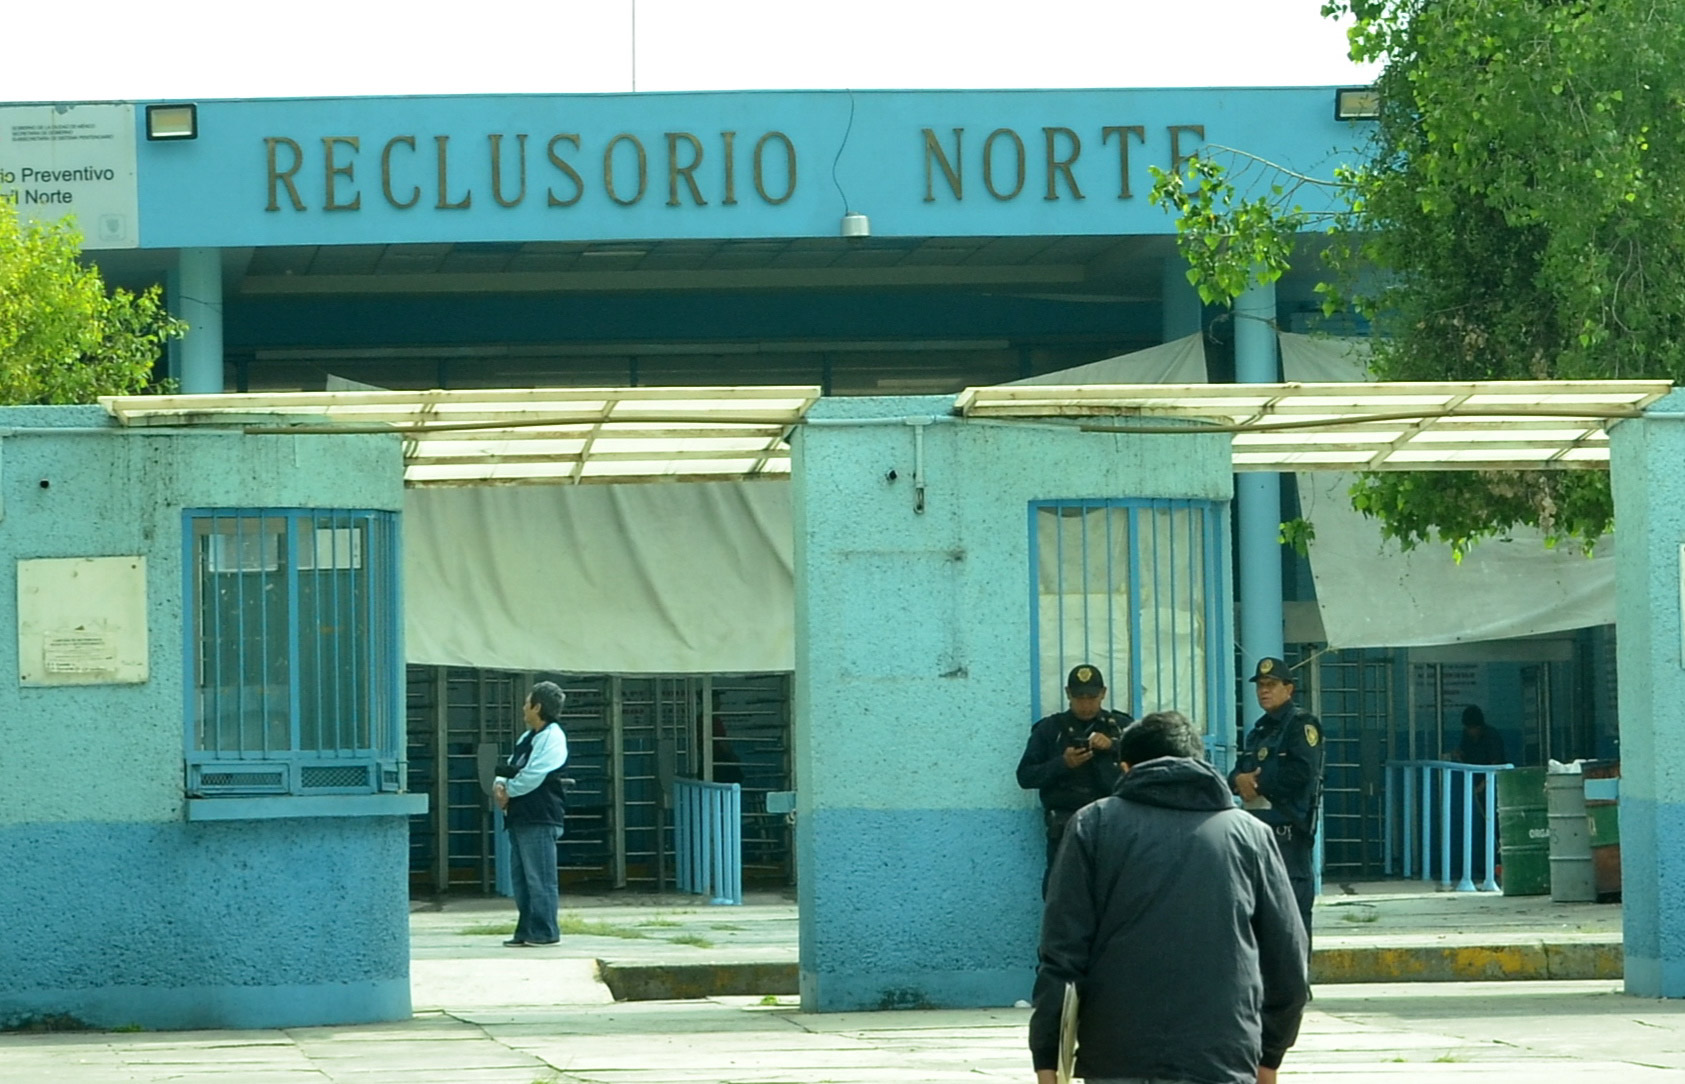 La prisión preventiva ha sido tema de debate en México en los últimos meses.
FOTO: ARMANDO MONROY /CUARTOSCURO.COM